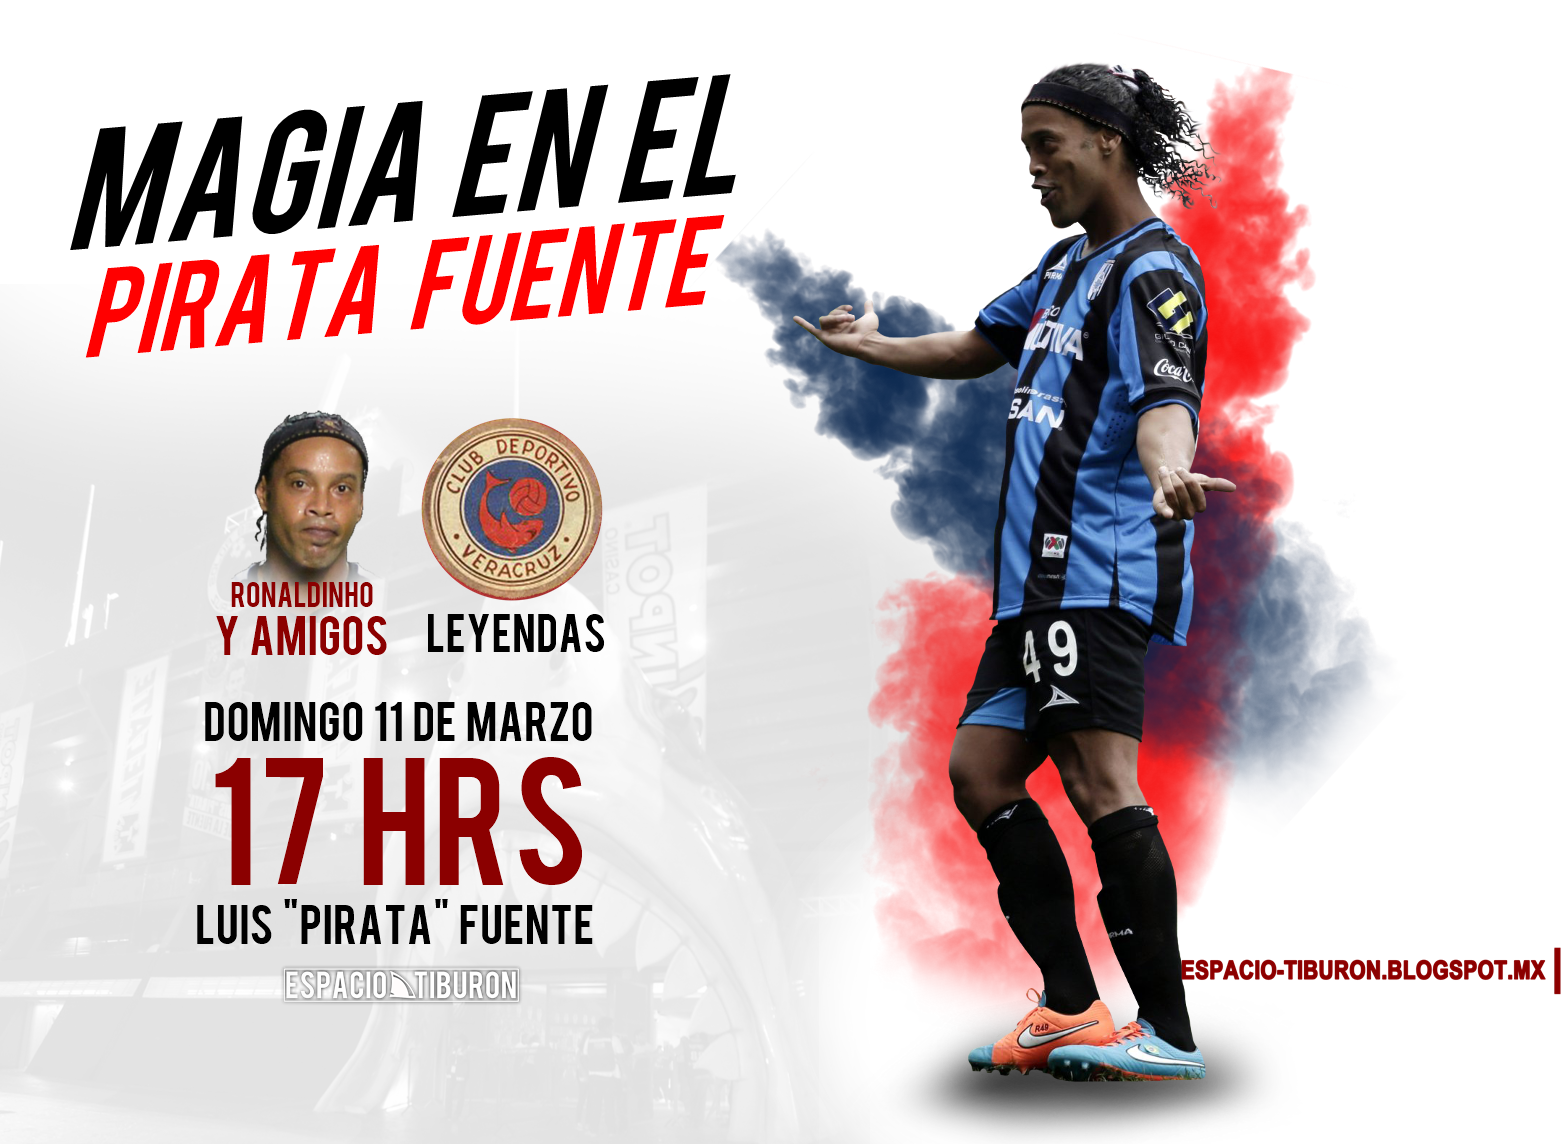 TODOS LOS DETALLES: Ronaldinho jugará en Veracruz | AQUI COMPRA LOS BOLETOS